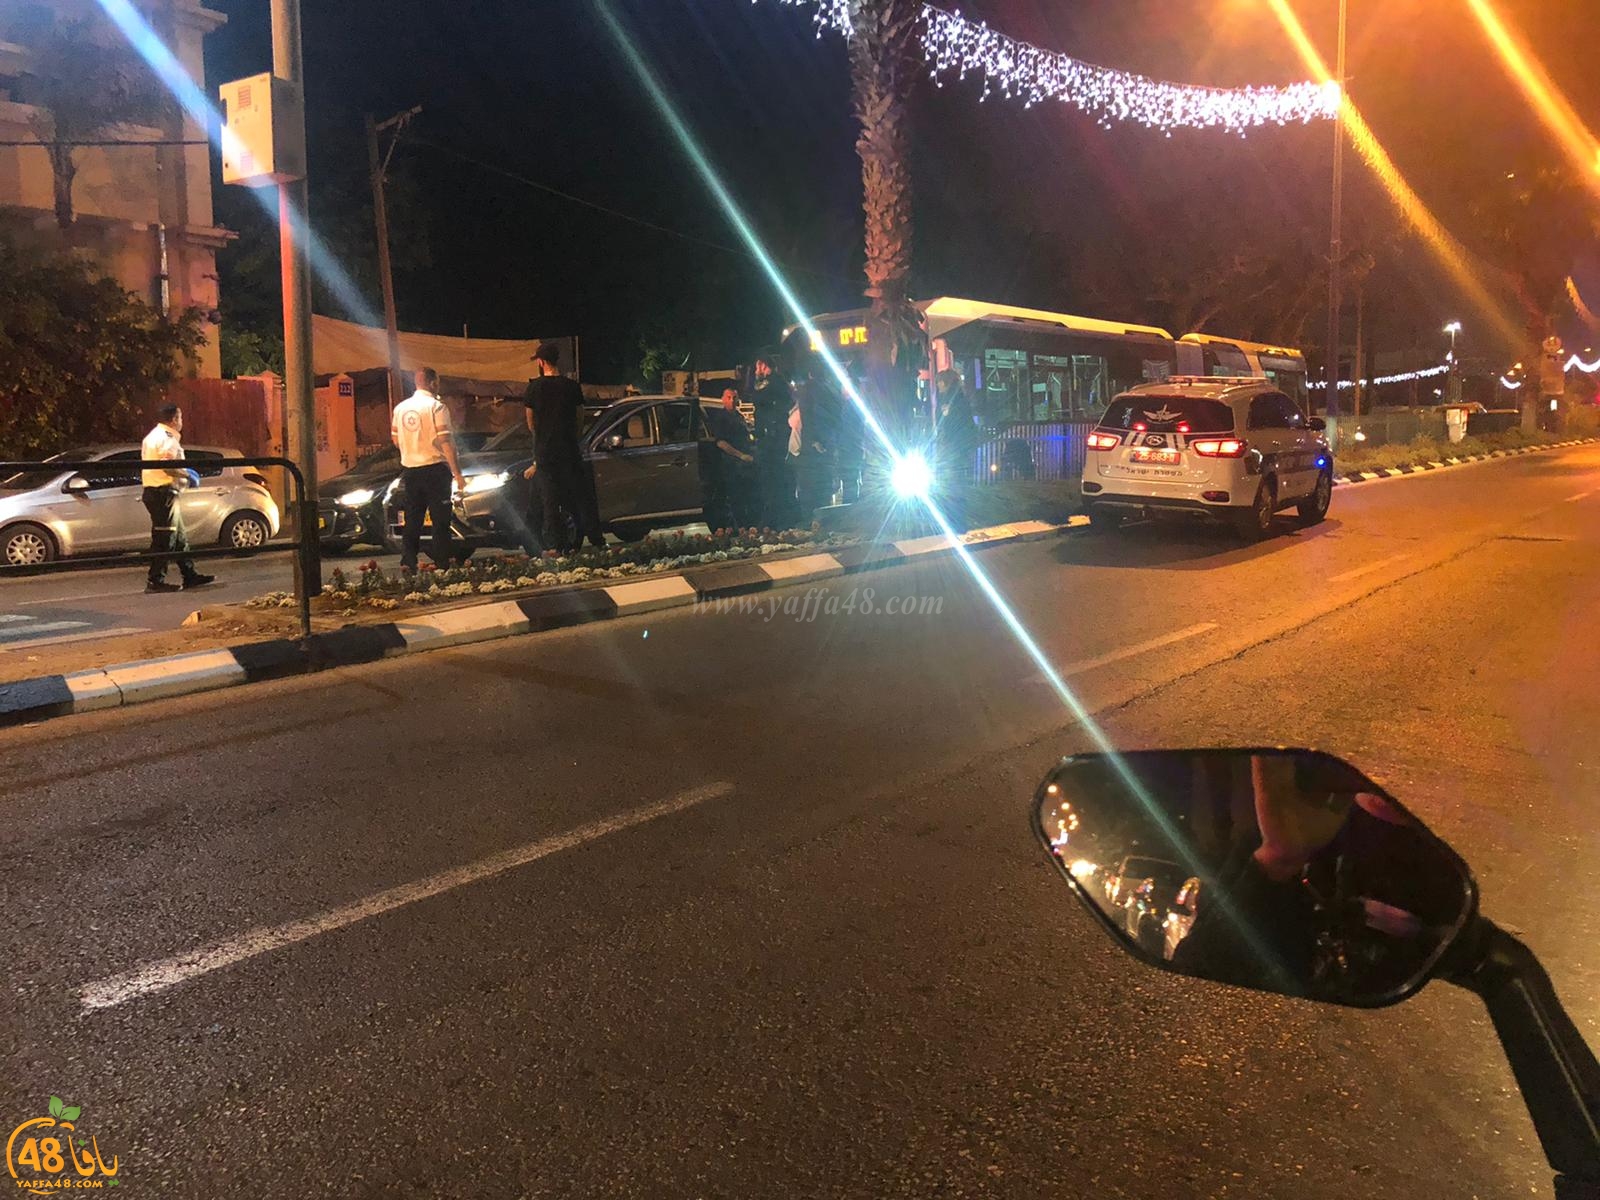  يافا: حادث طرق بين حافلة ومركبة في شارع ييفت الرئيس 